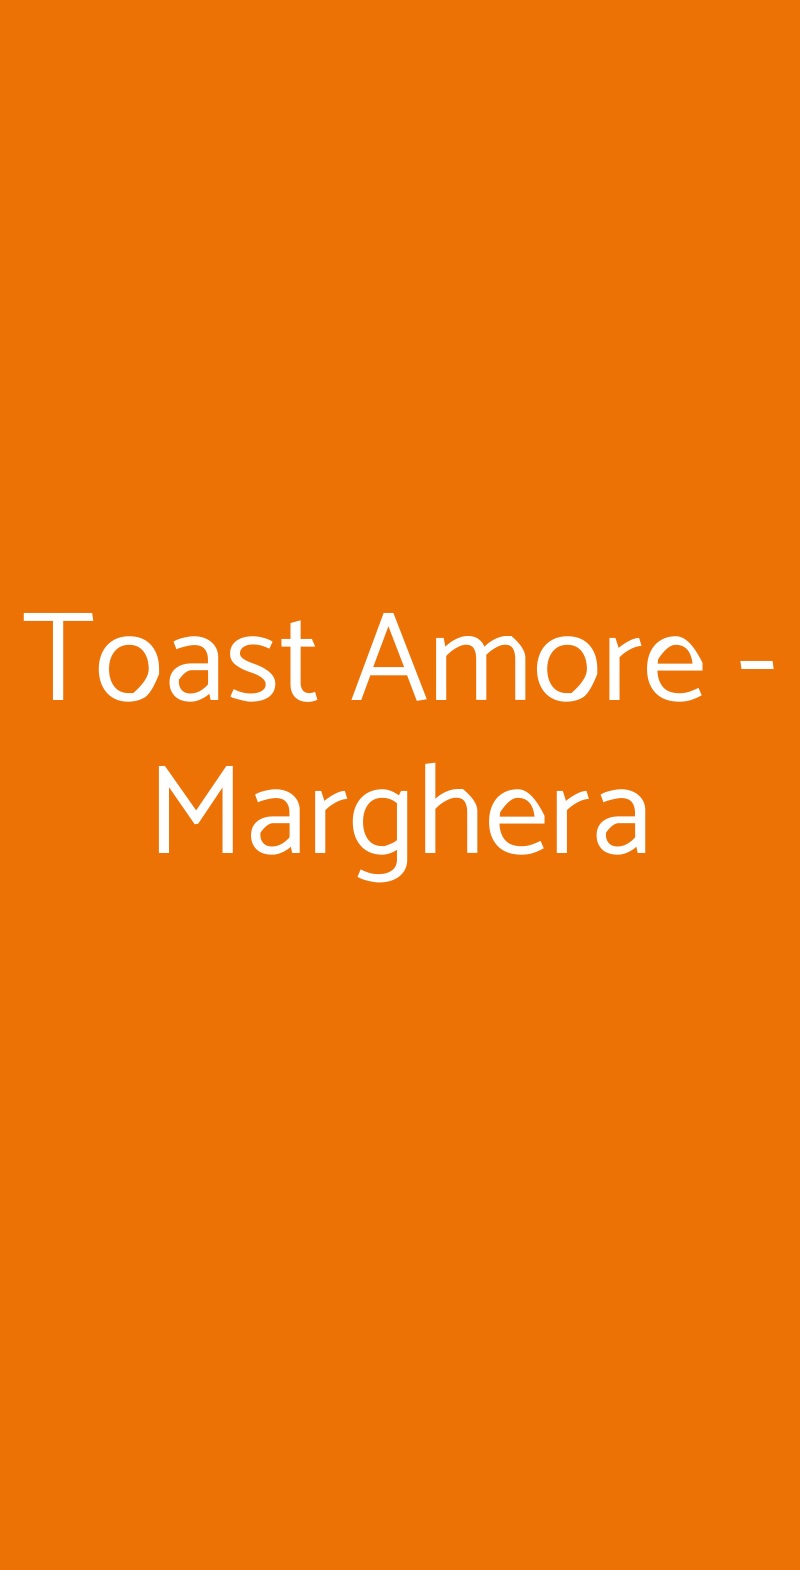 Toast Amore - Marghera Milano menù 1 pagina